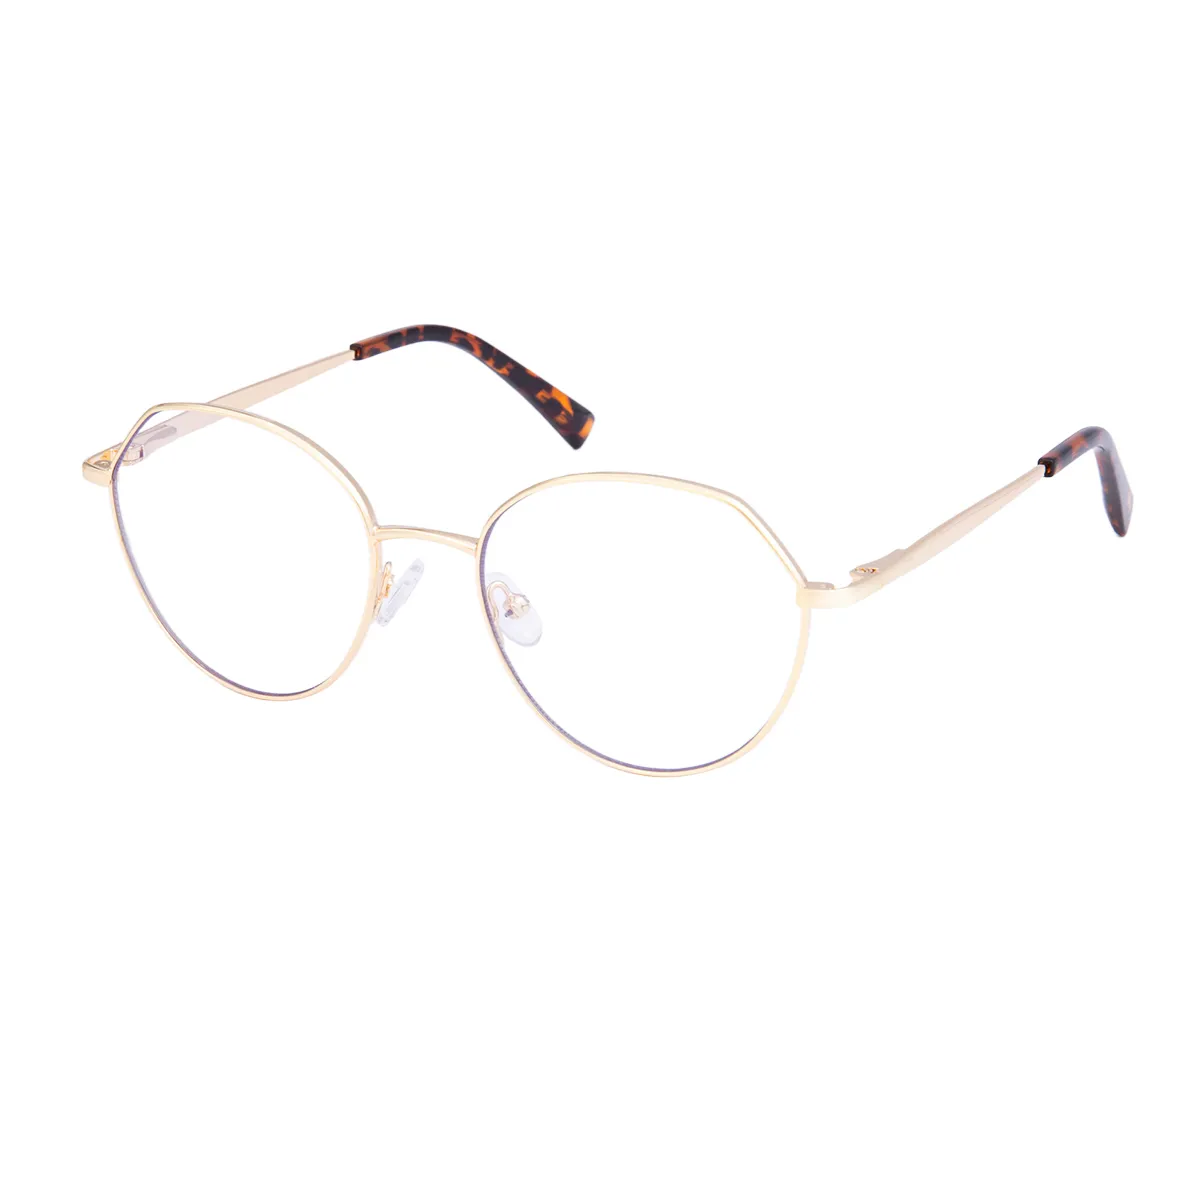 Gwendolyn - Geometric Gold/Tortoiseshell Glasses for Men & Women